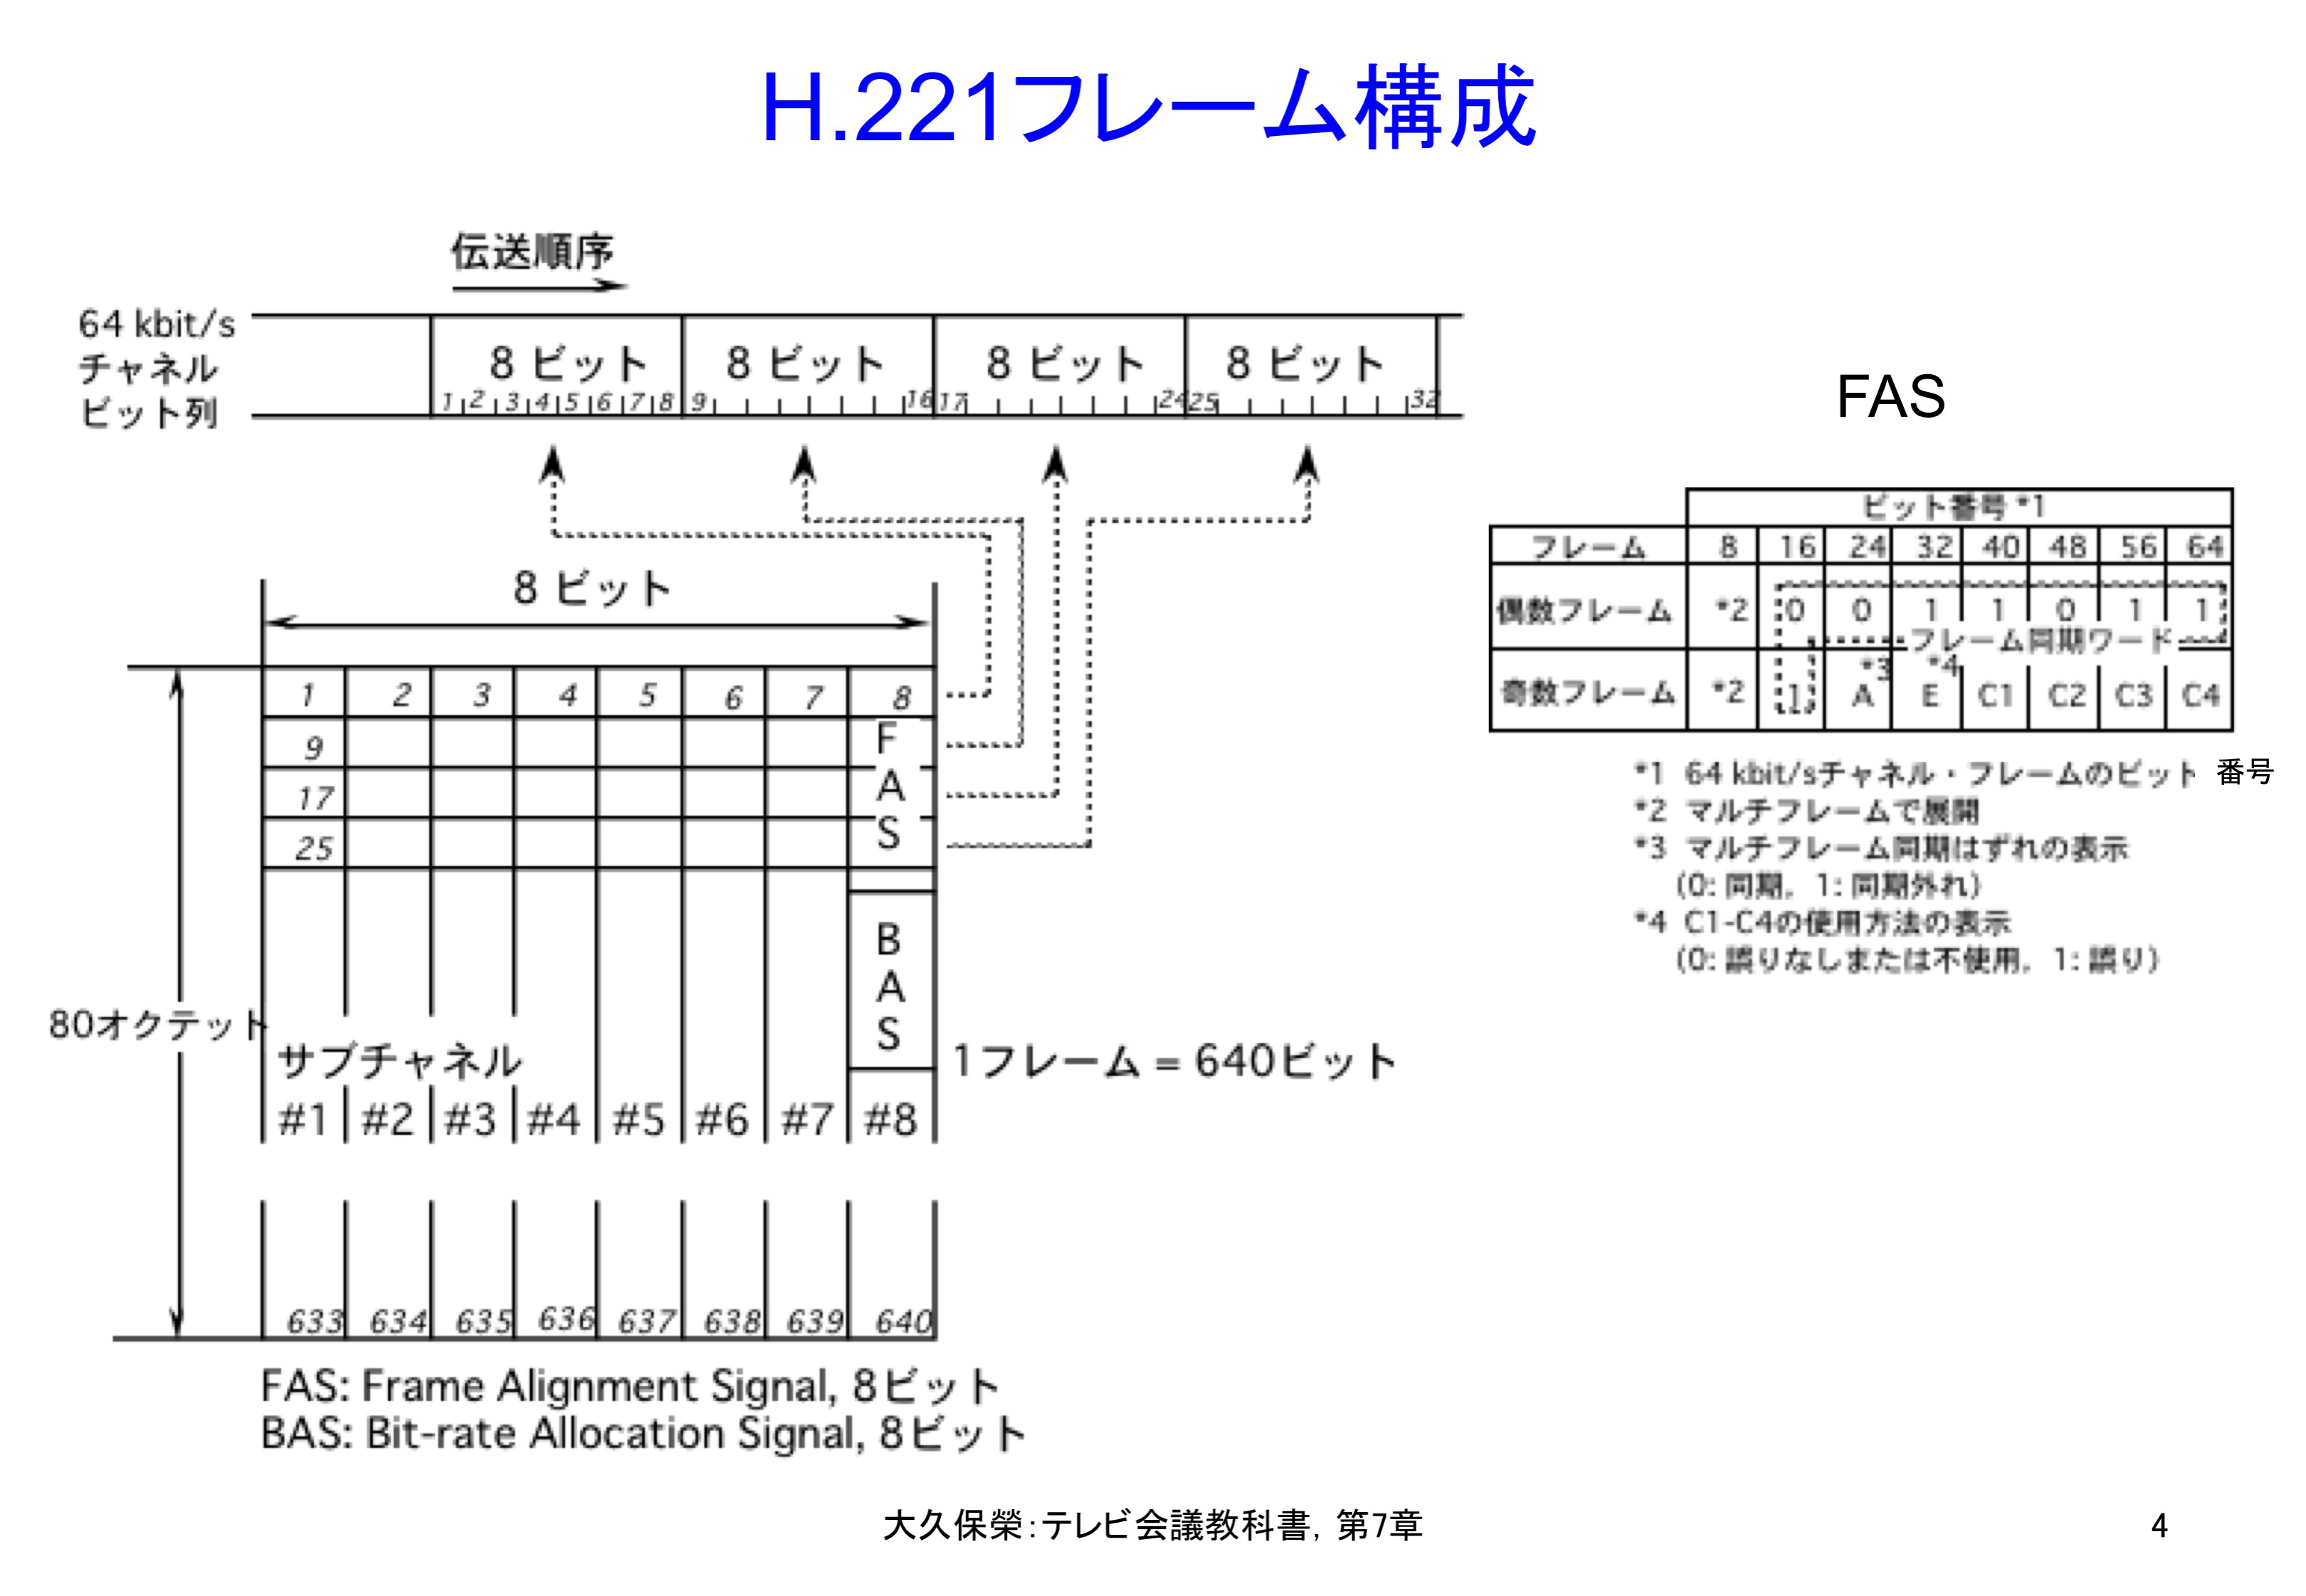 図7-4 H.221フレーム構成